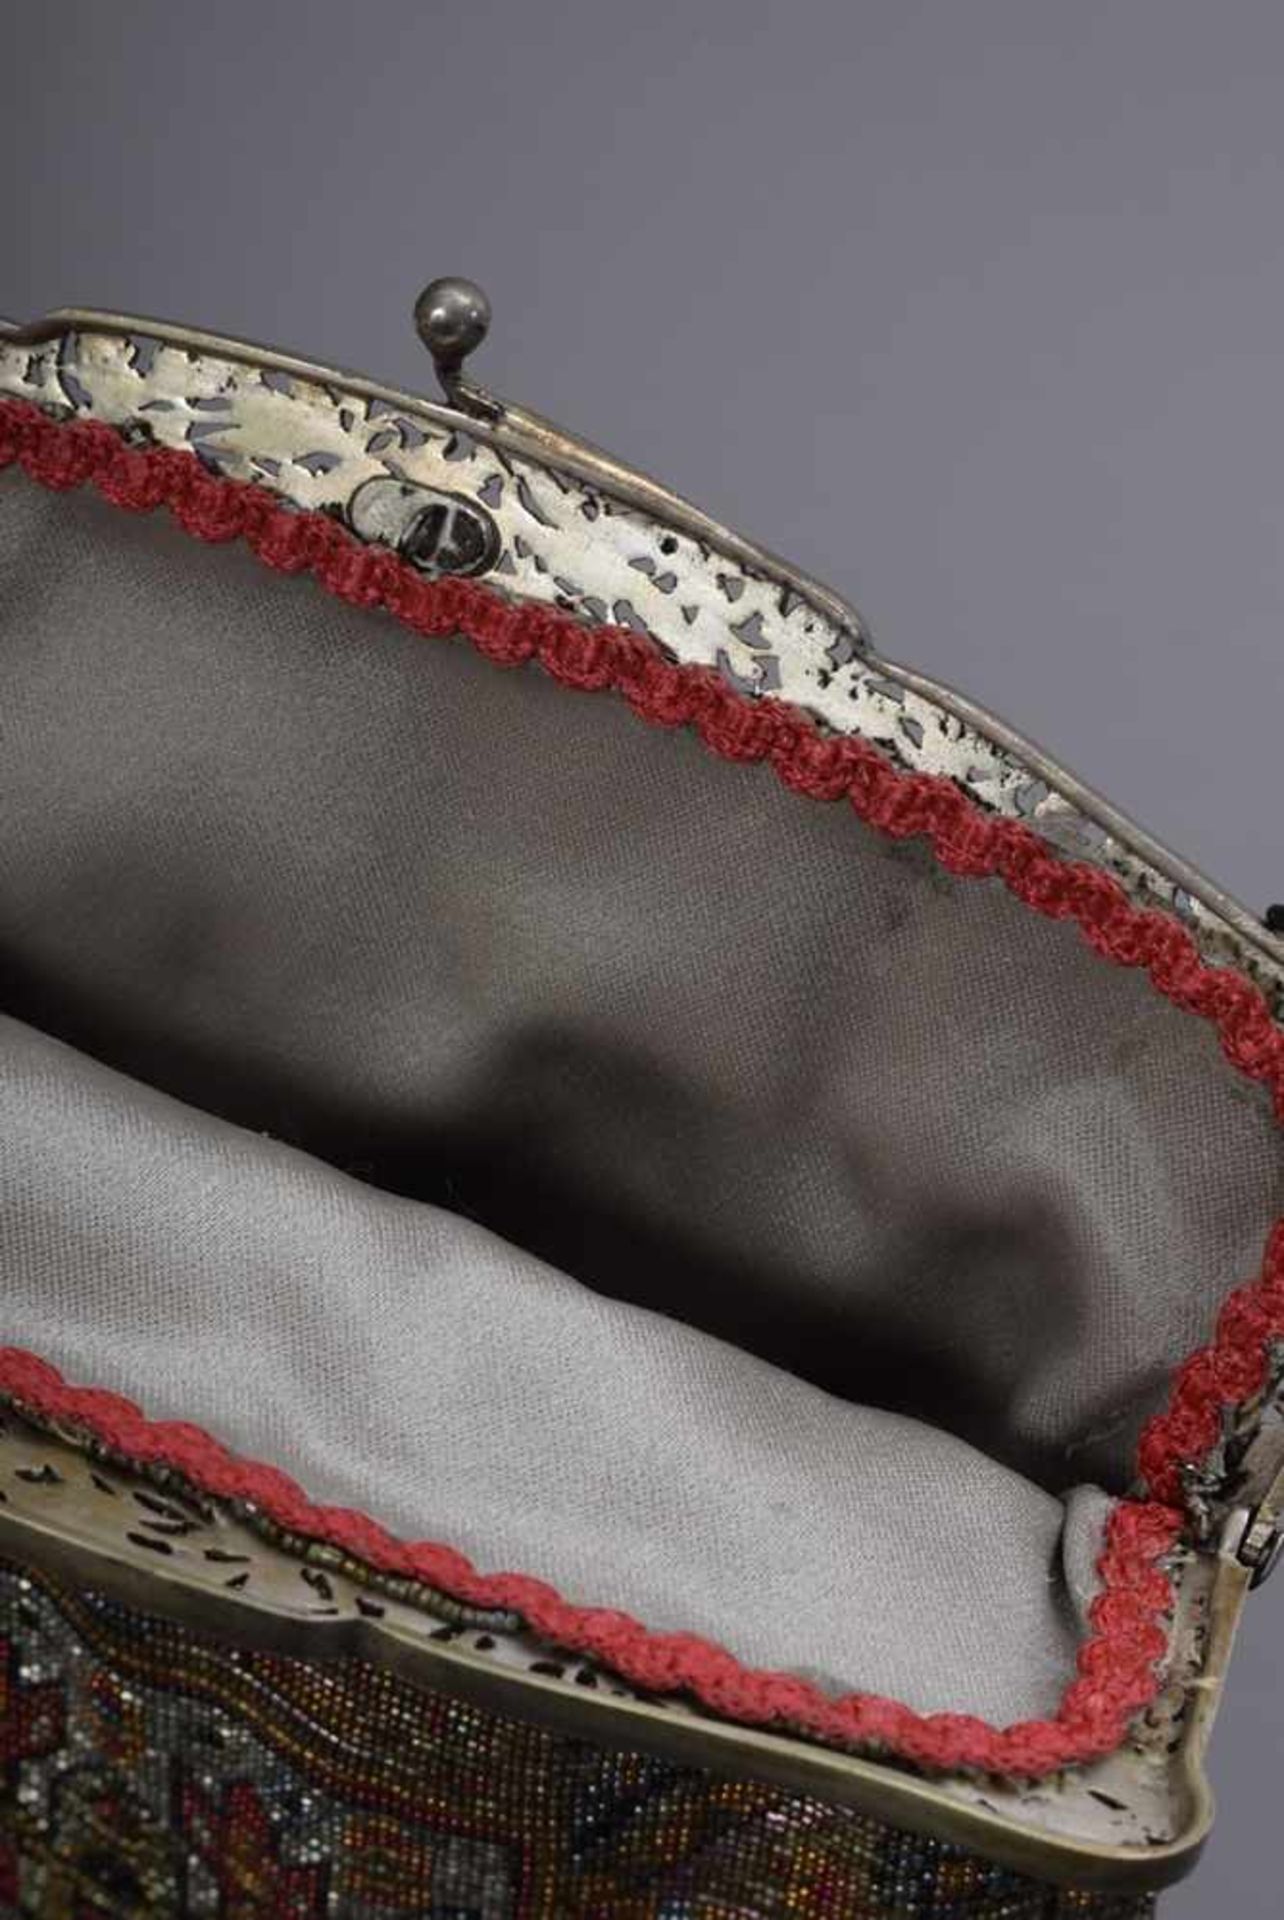 Art Deco Perlstickerei Tasche mit ornamentalem Dekor und floral durchbrochenem Silber 800 Bügel, - Bild 4 aus 4